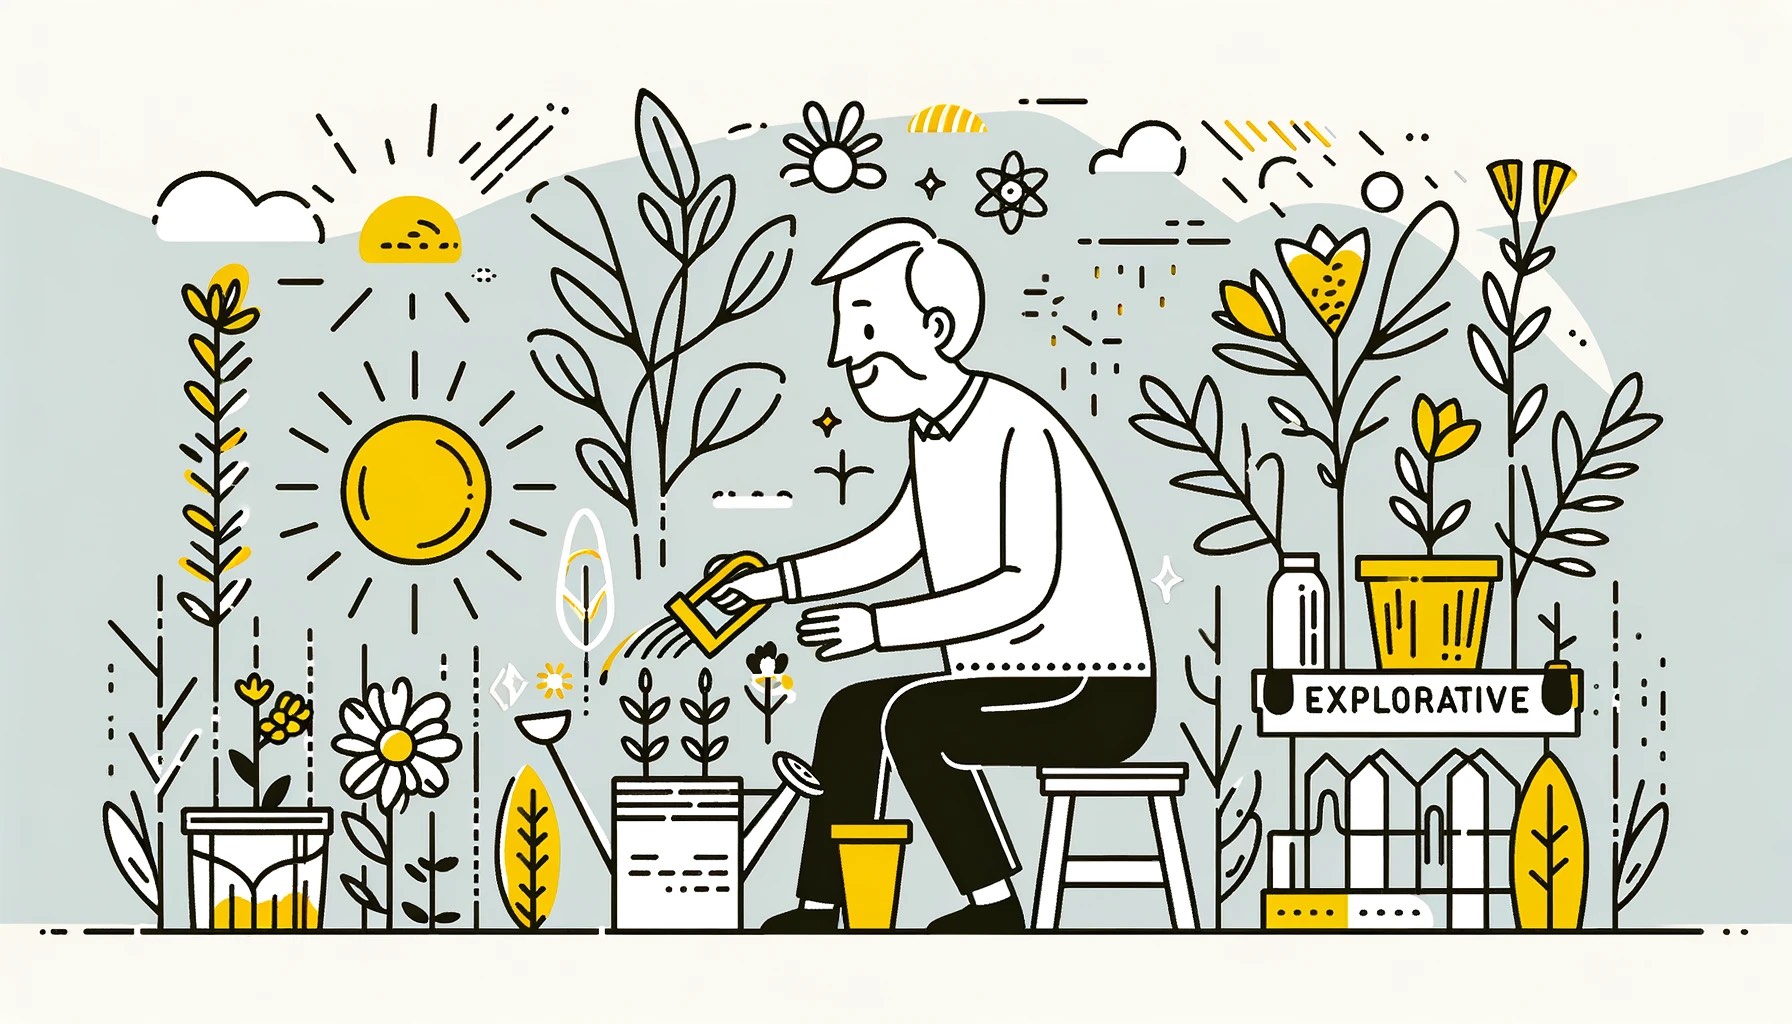 Eine ältere Person in einem Garten, glücklich und neugierig beim Pflanzen von Samen in Töpfen. Gartenwerkzeuge und eine Gießkanne sind in Gelb hervorgehoben, was ihre aktive Beteiligung und Entdeckung bei der Aufgabe symbolisiert